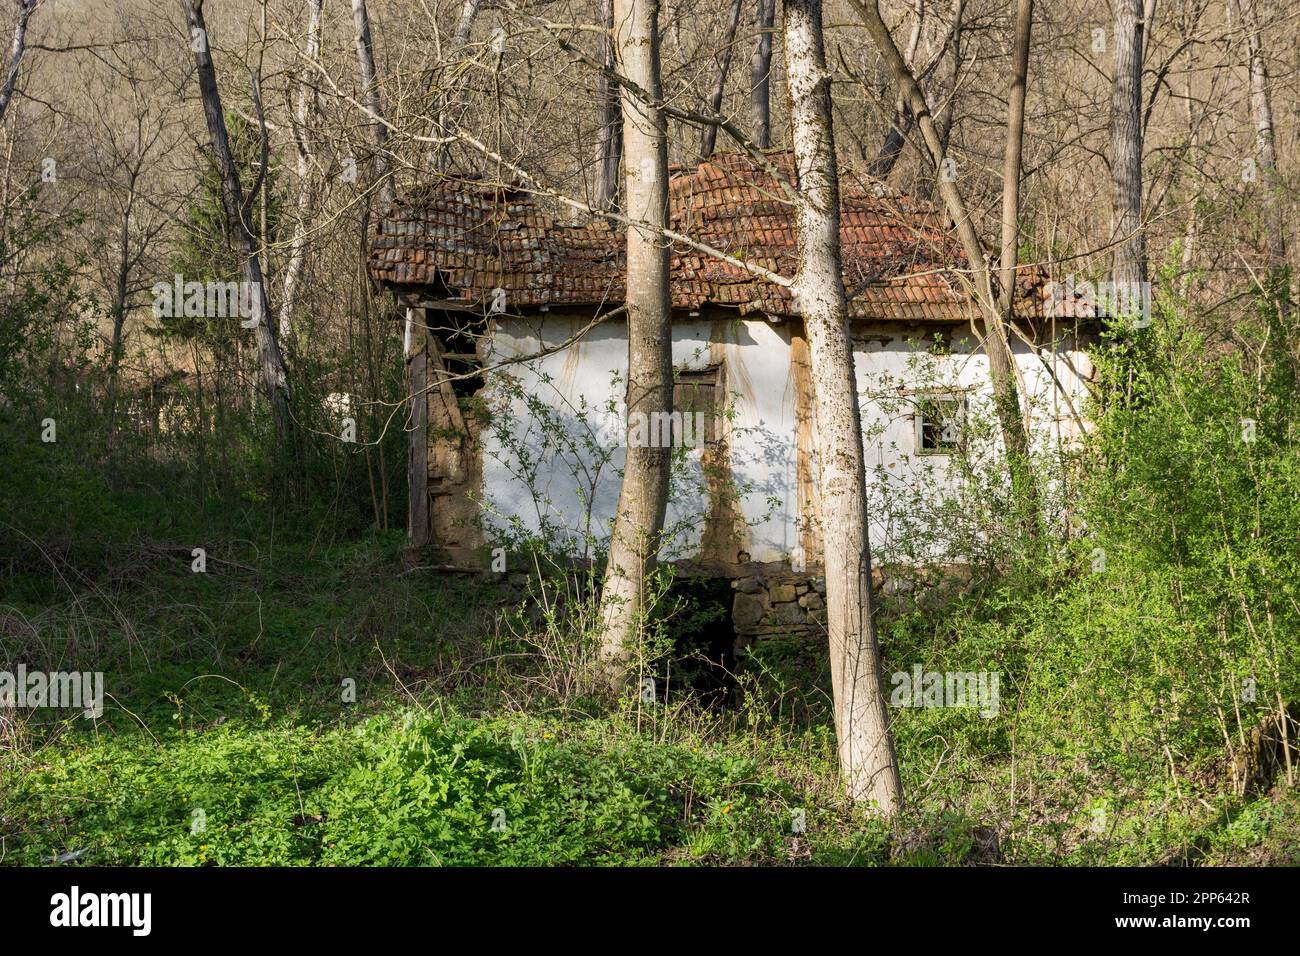 Eine extrem alte primitive Wassermühle, die langsam von selbst zusammenbricht, befindet sich im Wald und ist mit Büschen und Bäumen überwuchert Stockfoto